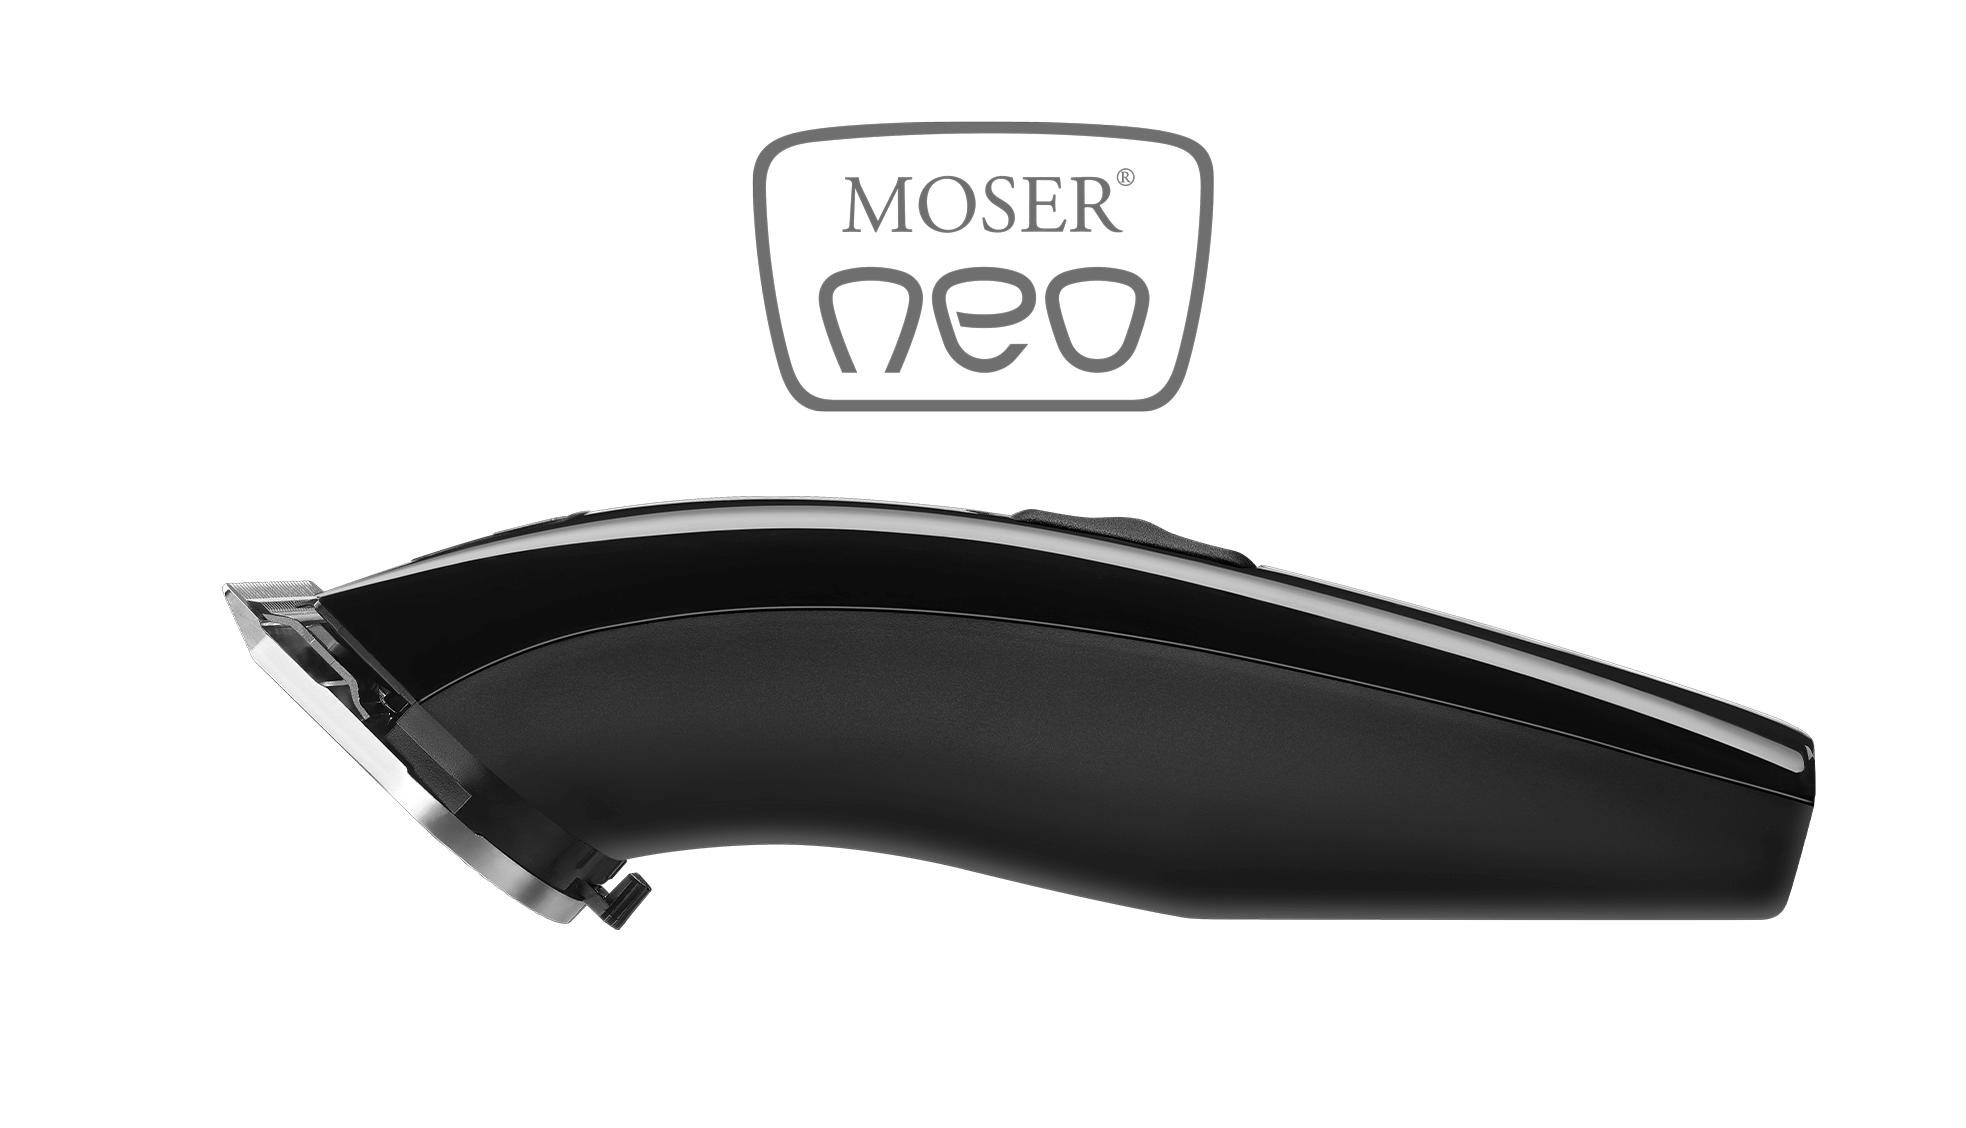 Moser Neo Clipper